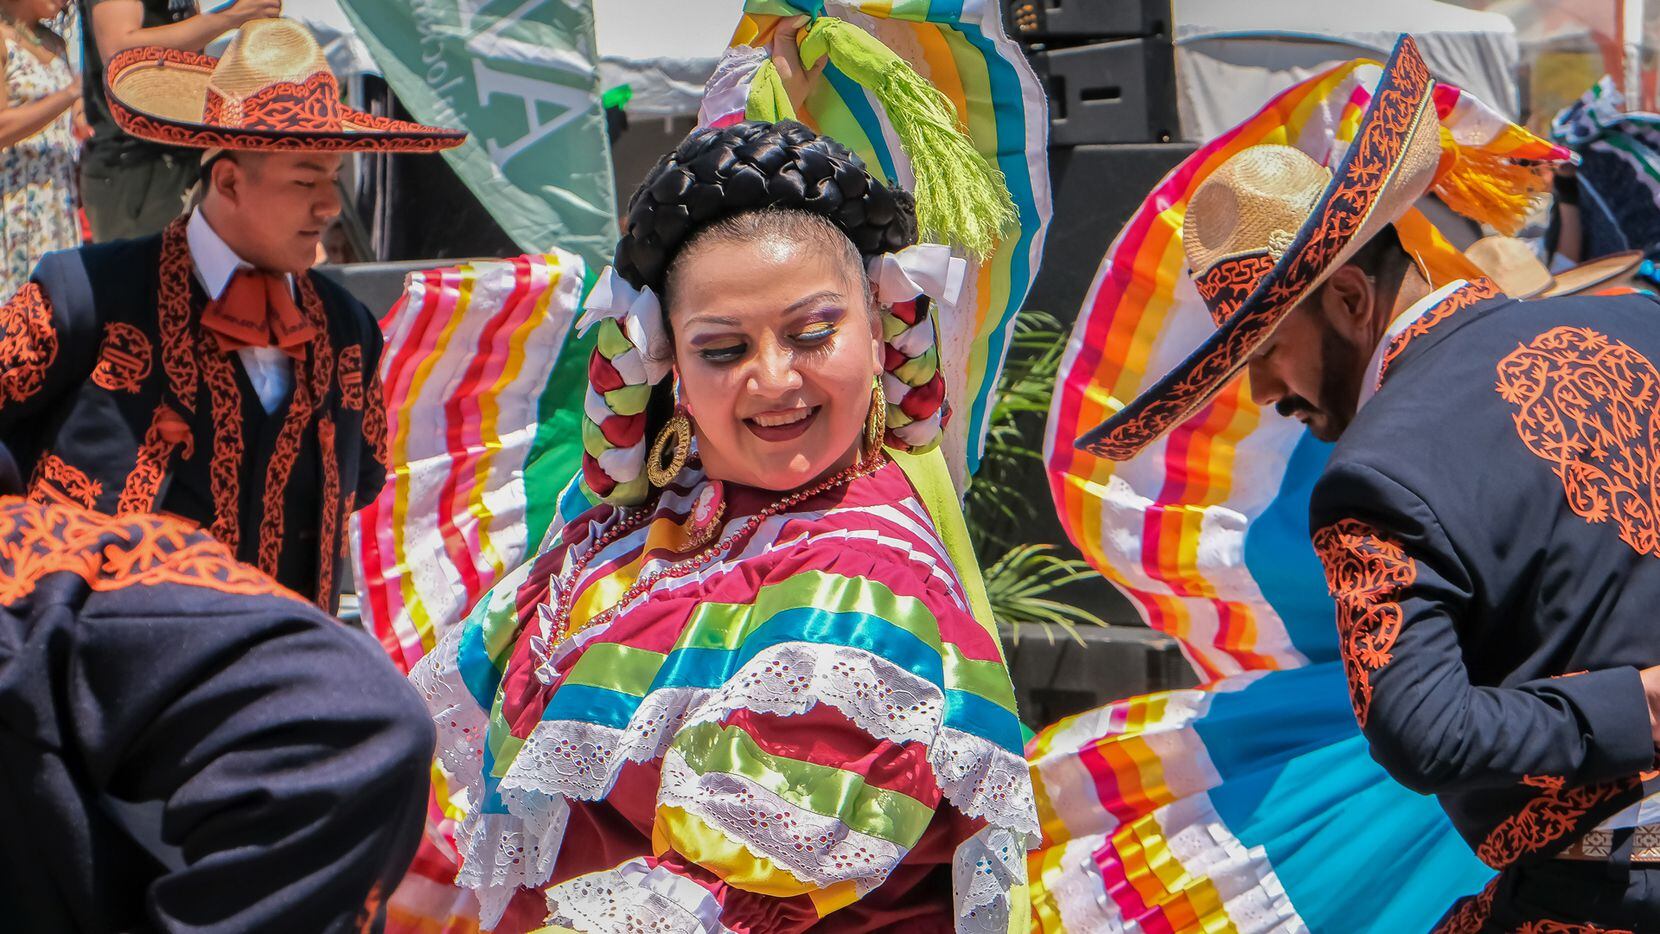 El Latino Street Fest se desarrollará en el Klyde Warren Park el 24 de abril.